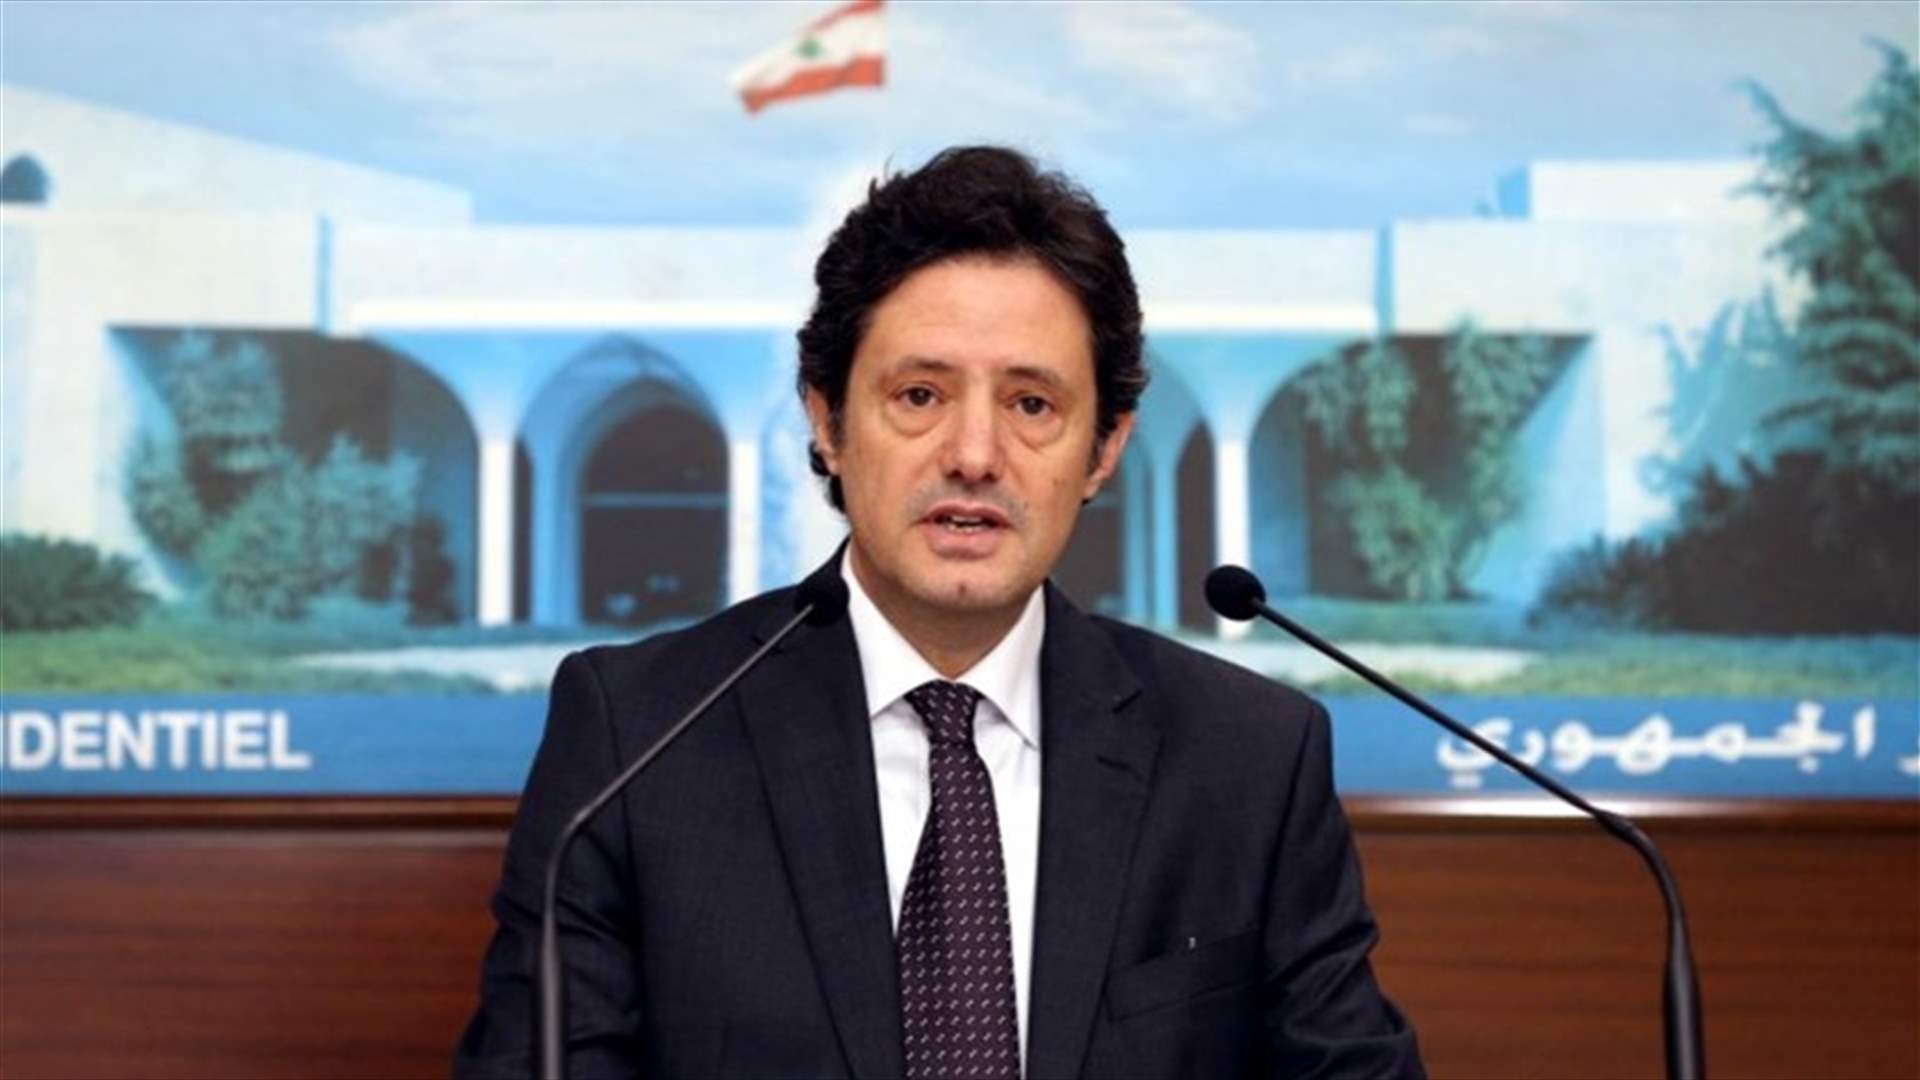 المكاري بعد مجلس الوزراء: وزارة الصحة طلبت إلى مصرف لبنان تسديد ثمن استيراد أدوية طبية